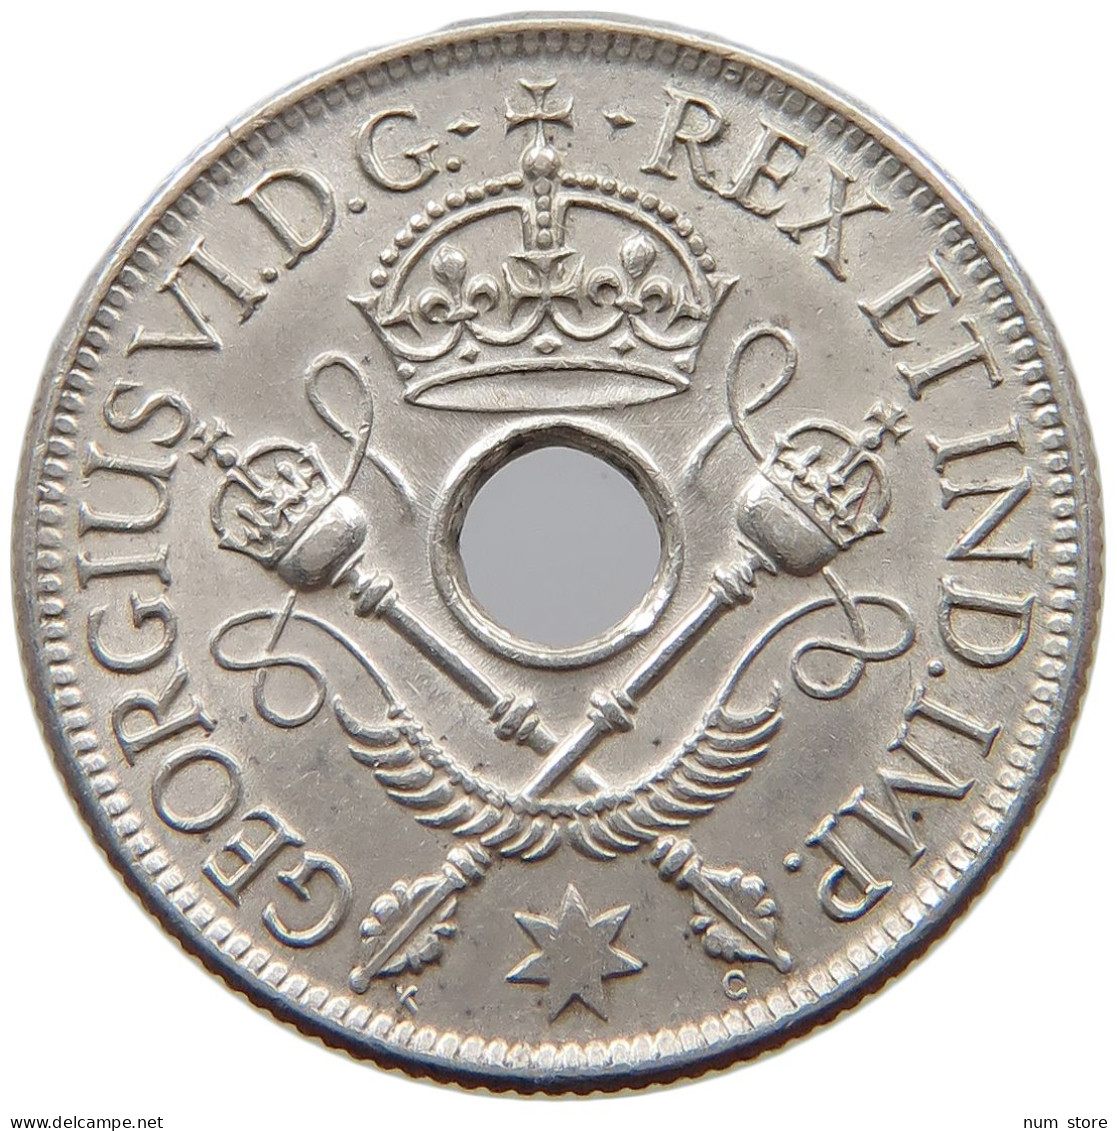 NEW GUINEA SHILLING 1938 George VI. (1936-1952) #a081 0685 - Papuasia Nuova Guinea